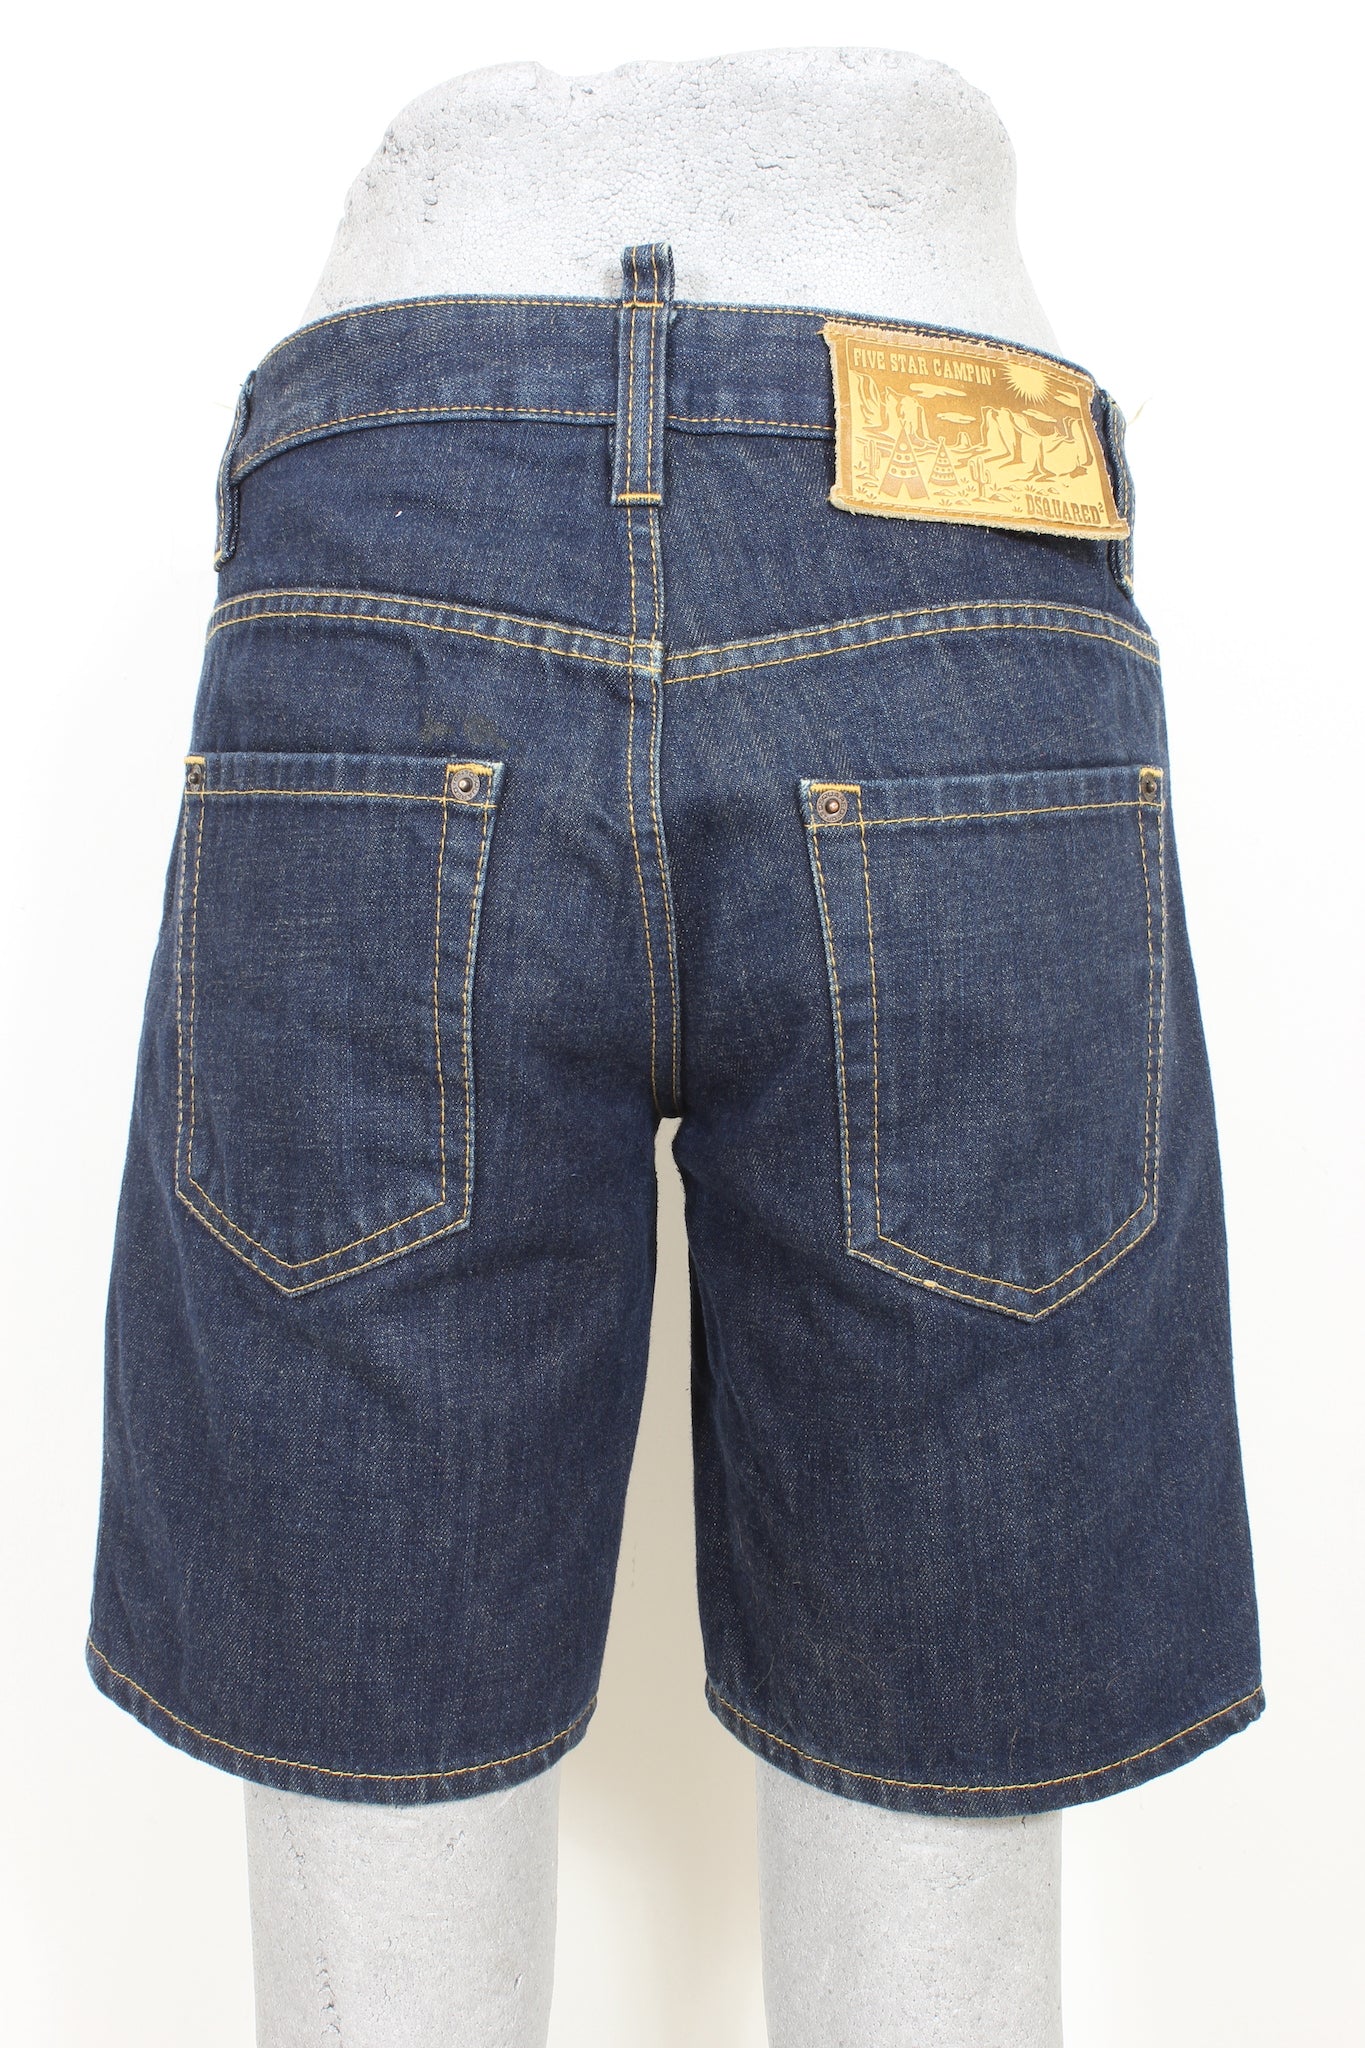 Dsquared Pantaloni Corti Jeans Cotone Blu Anni 2000